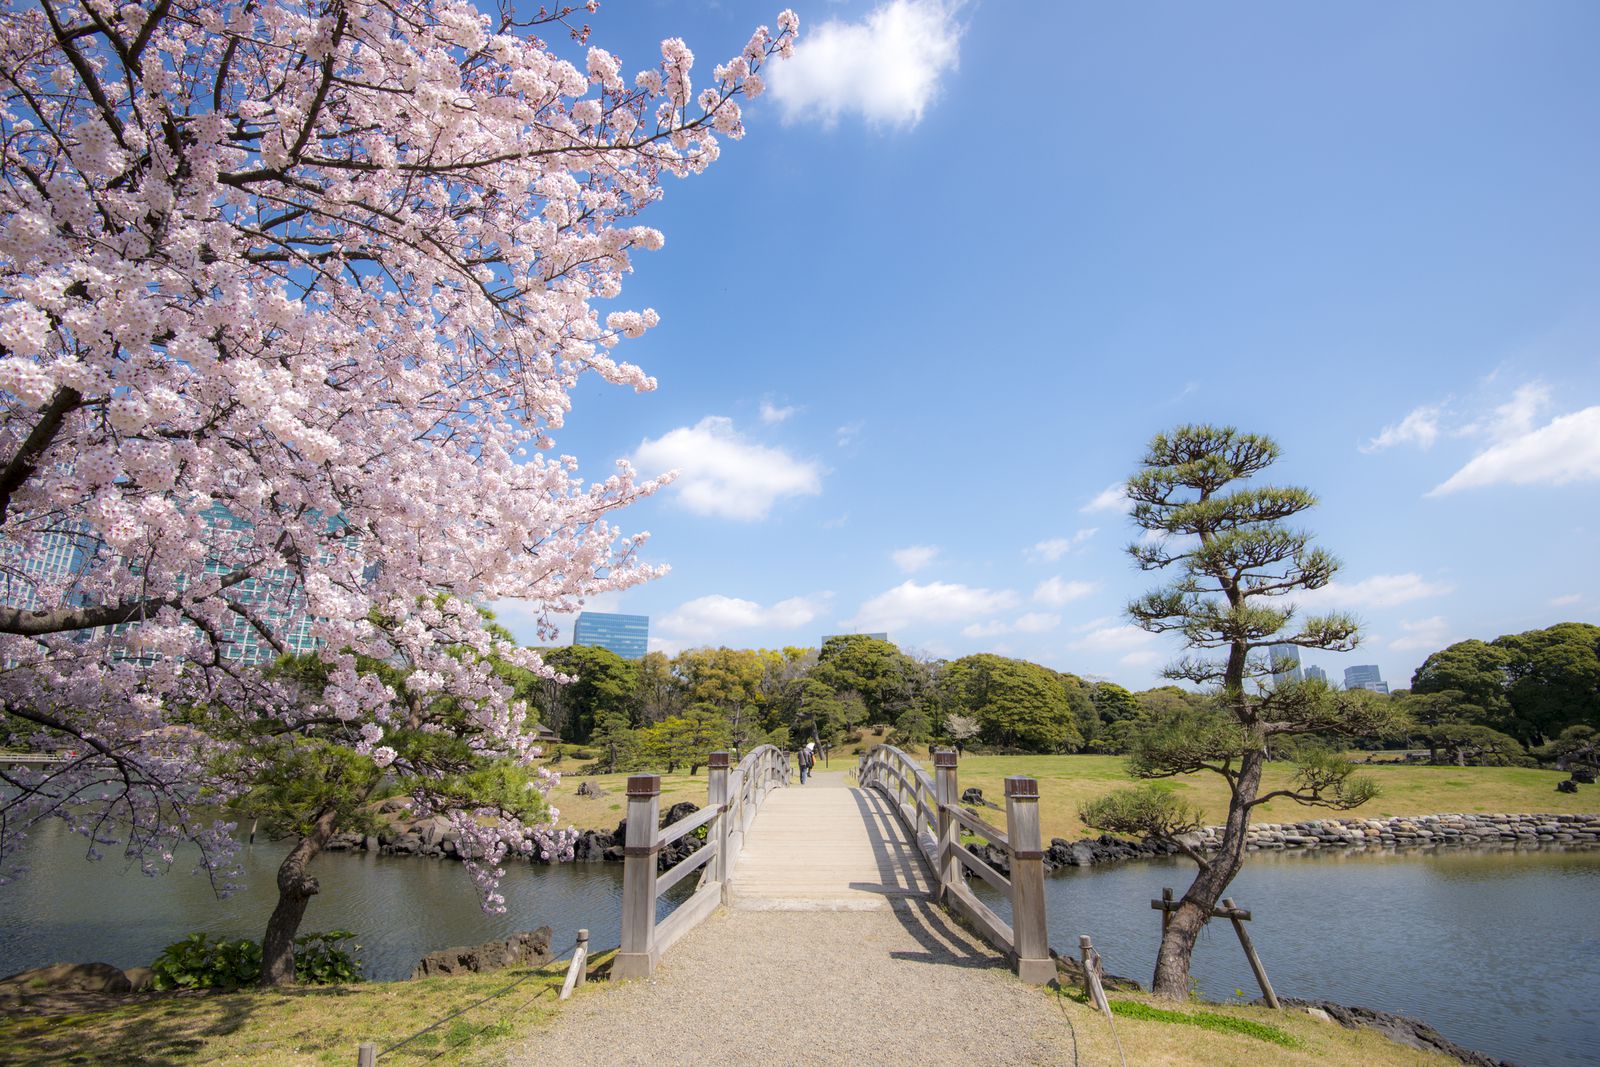 大人女子の休日のすゝめ 東京都内の ひとりで行きたい 春のお散歩スポット7選 Retrip リトリップ